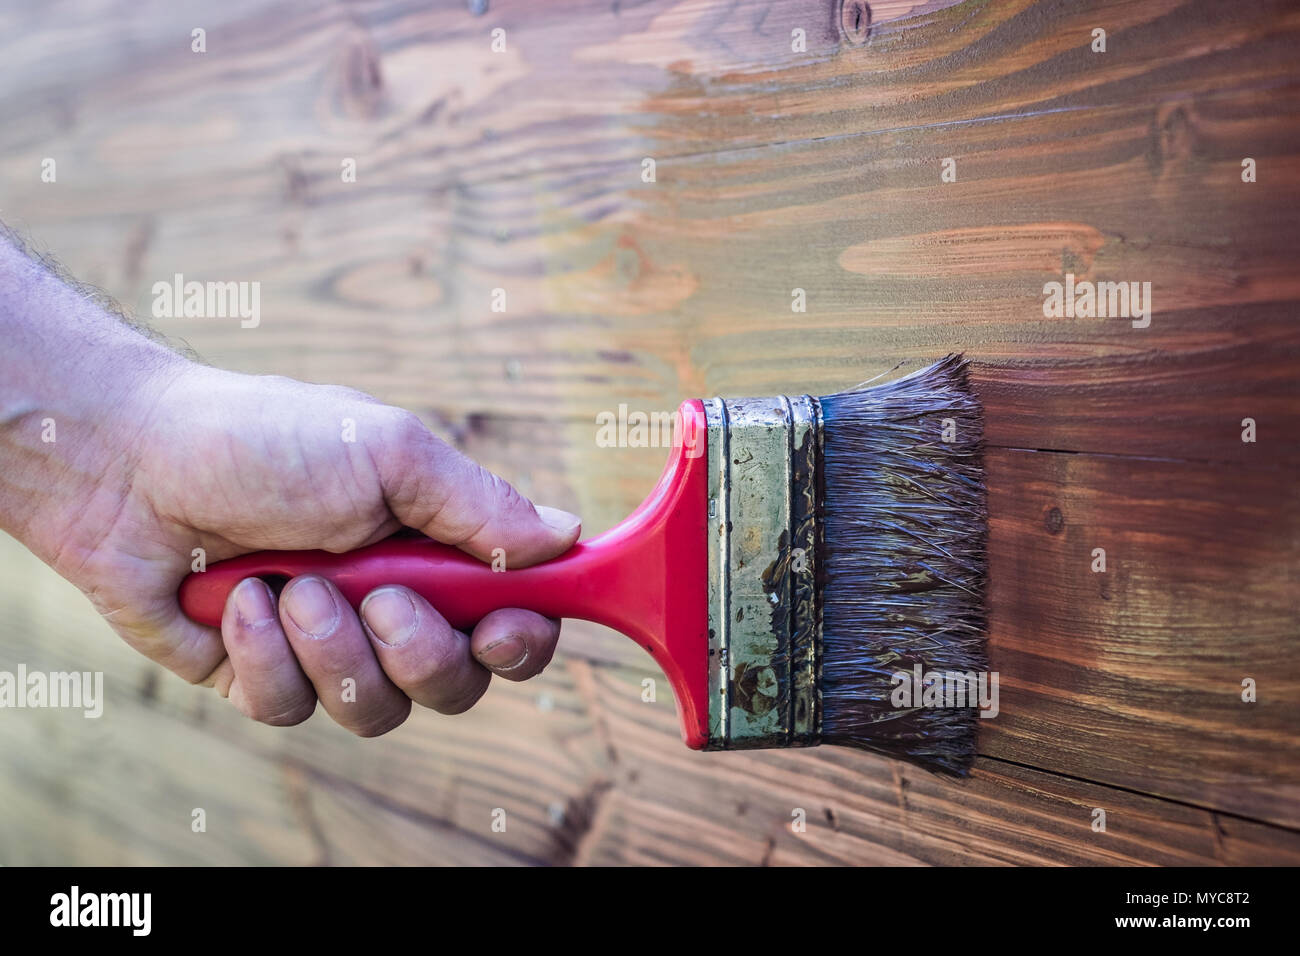 paintbrush on wood - brush on wooden texture Stock Photo